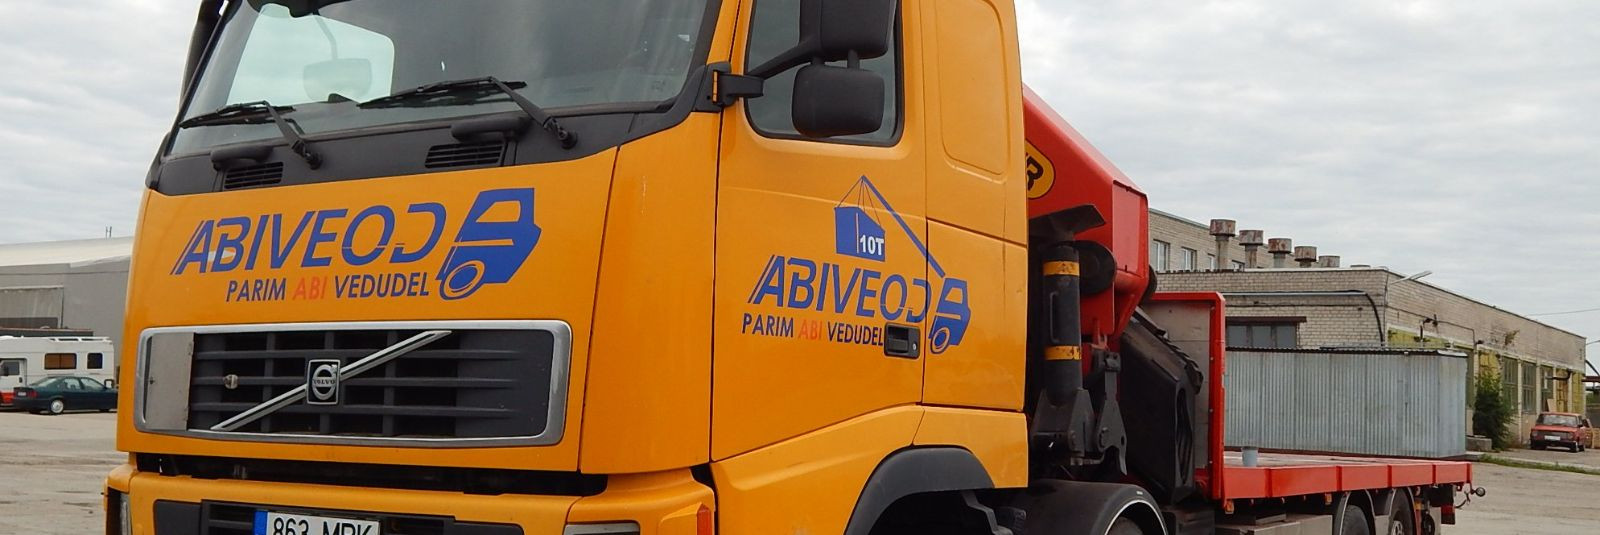 ABIVEOD OÜ on logistikavaldkonnas juhtiv ettevõte, kes pakub kvaliteetseid ja mitmekülgseid teenuseid ehitus- ja tööstussektorile. Meie masinapark sisaldab hüdr